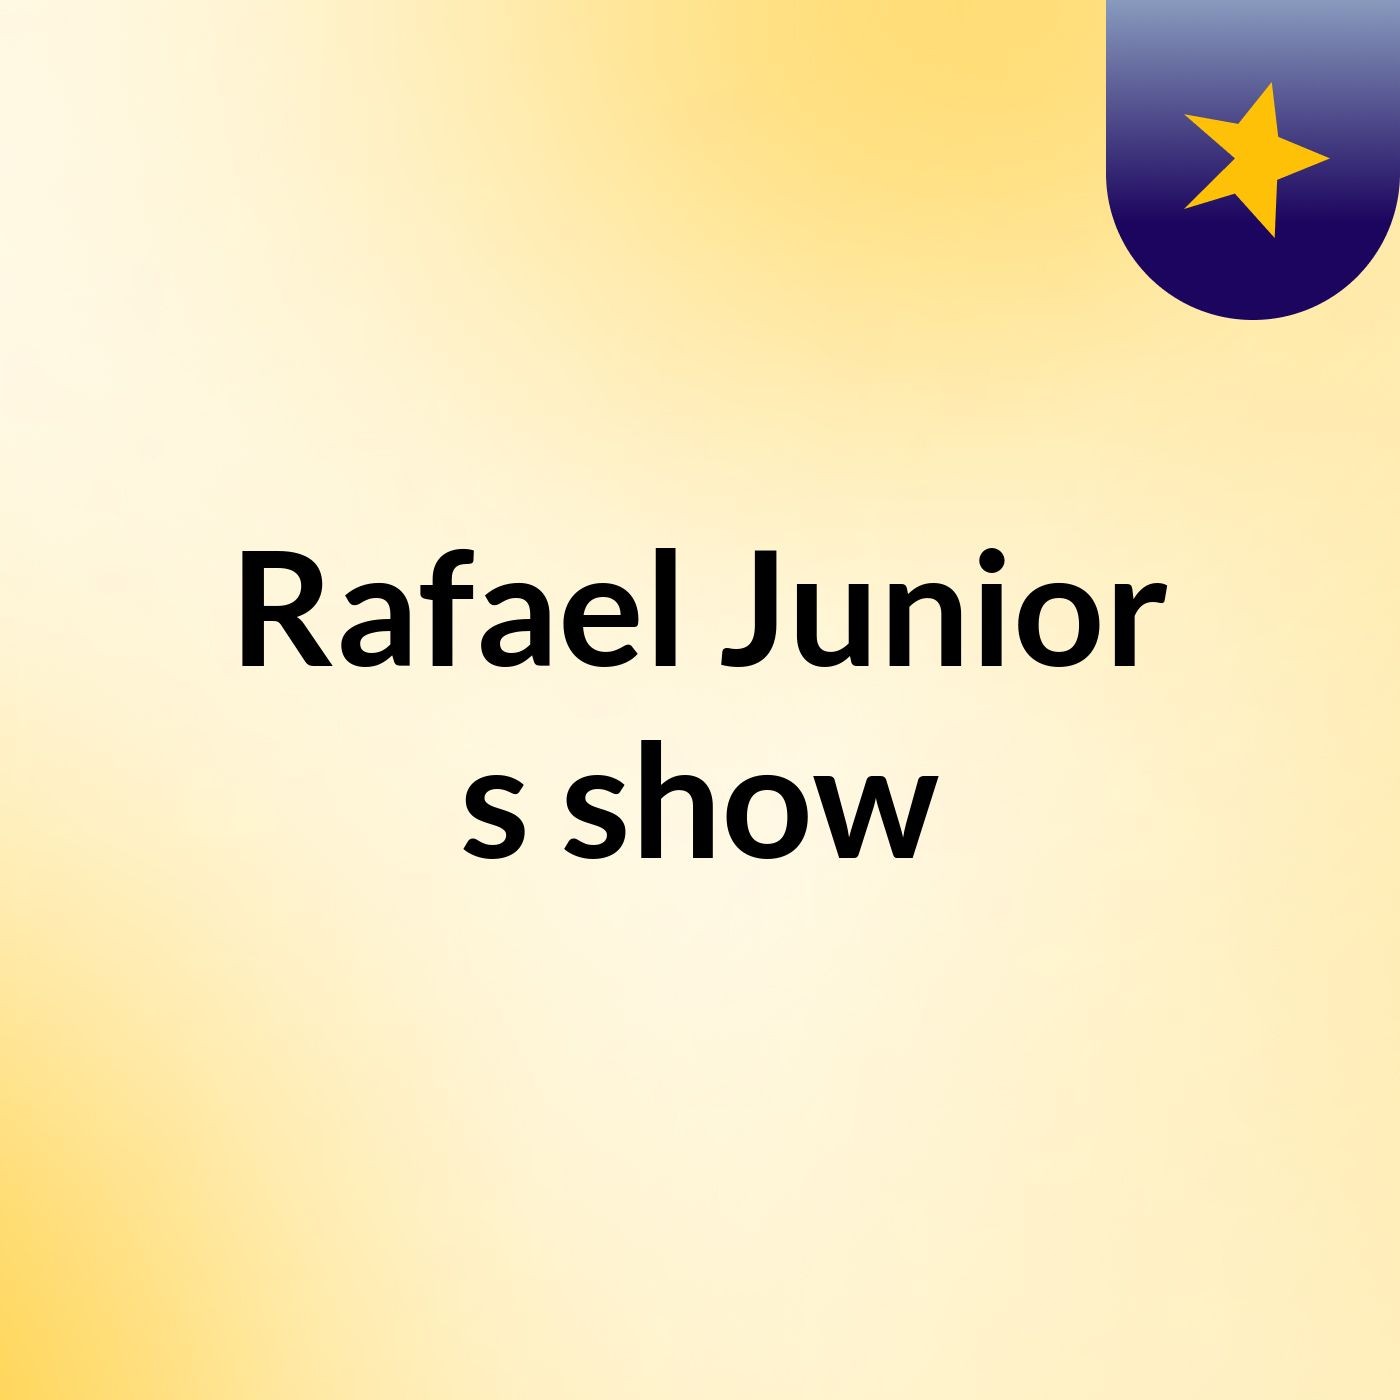 Rafael Junior's show